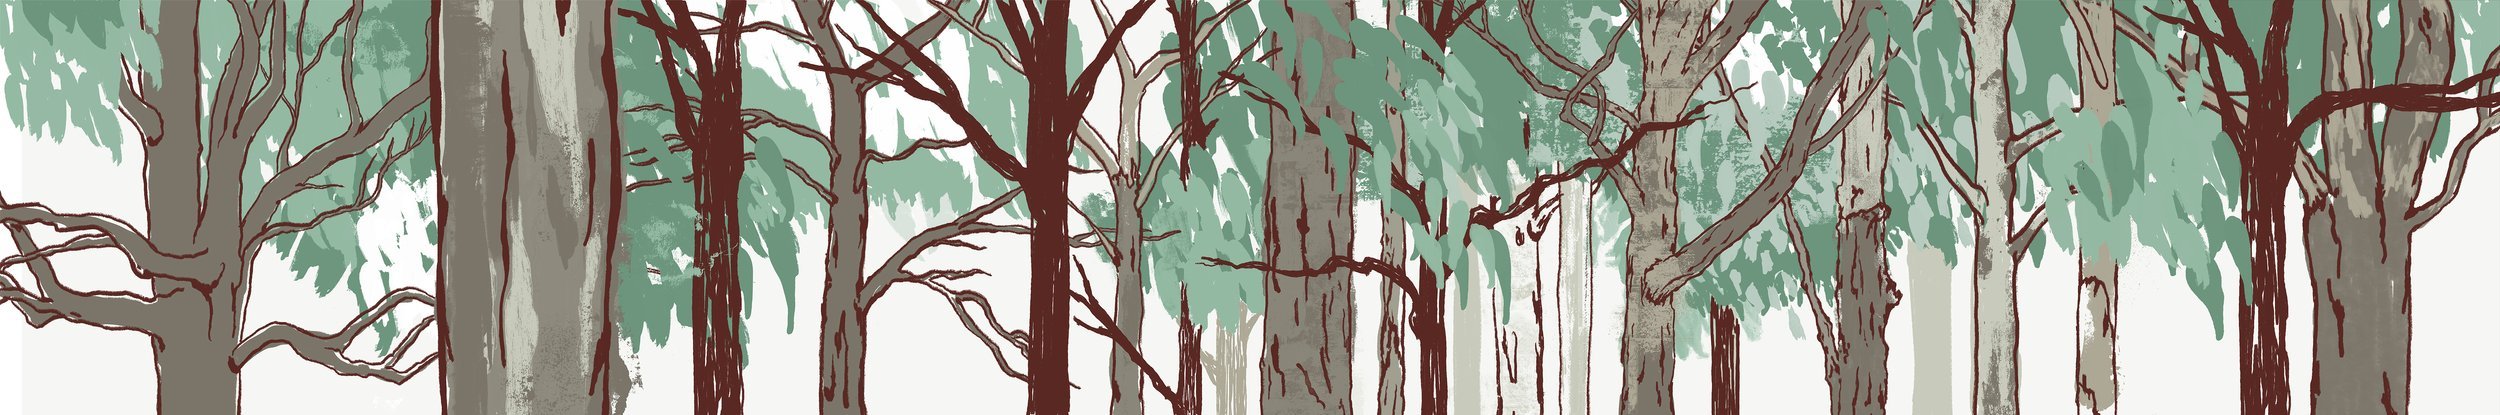 eucalyptus_forest.jpg